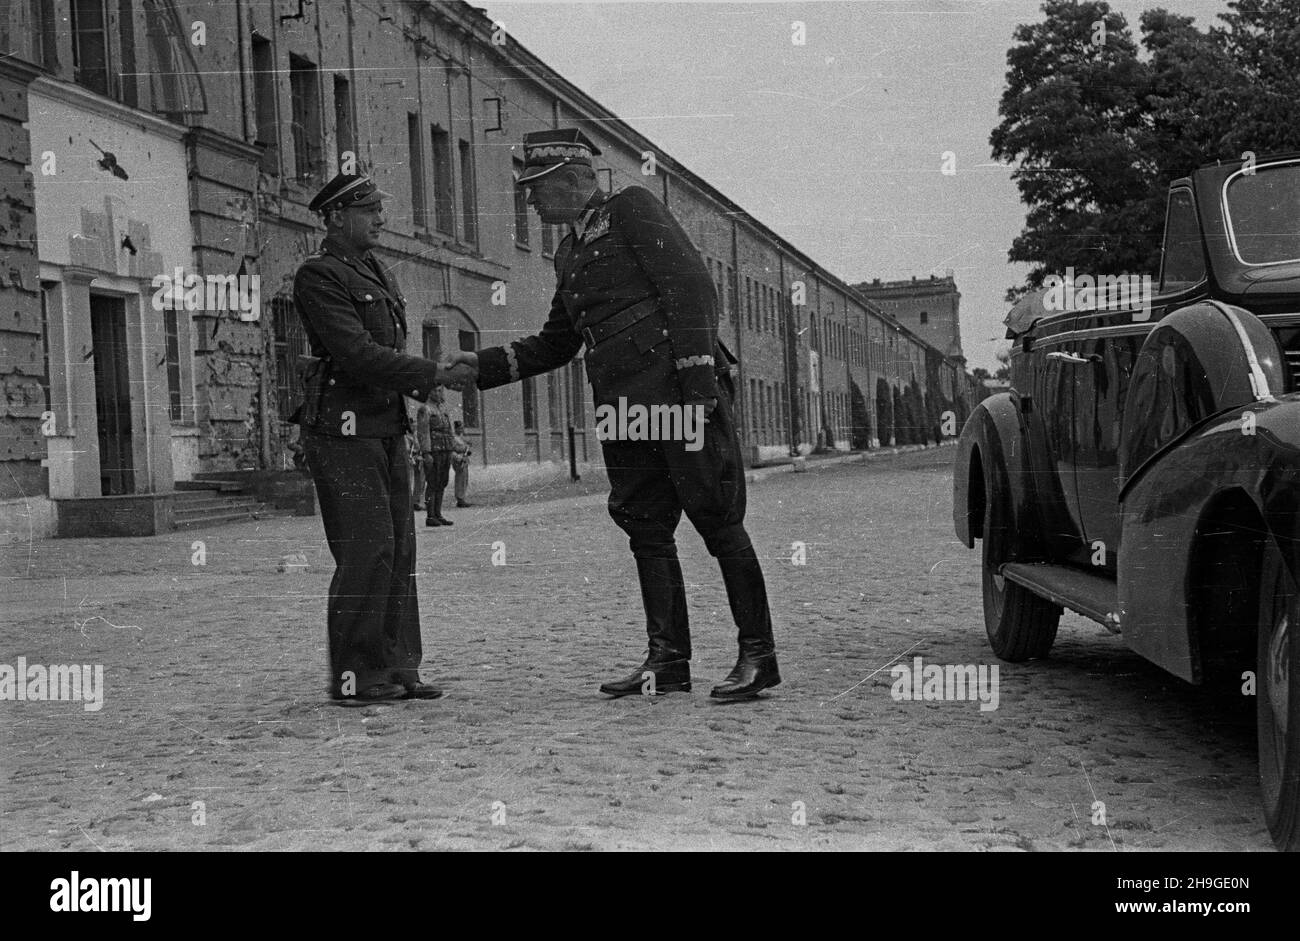 Modlin, 1948-06-18. Dowódca Wojsk L¹dowych gen. Stanis³aw Pop³awski przeprowadza inspekcjê jednostki samochodowej stacjonuj¹cej w Cytadeli Twierdzy Modlin w ramach generalnego przegl¹du taboru samochodowego. Nz. genera³ (P) wita siê z dowódc¹ jednostki. wb  PAP      Modlin, June 18, 1948. Army commander General Stanislaw Poplawski inspects the army motor car detachment stationed in the Citadel of the stronghold of Modlin as part of the general inspection of the army motor car detachments. Pictured: the general shakes hands with the detachment commander.  wb  PAP Stock Photo